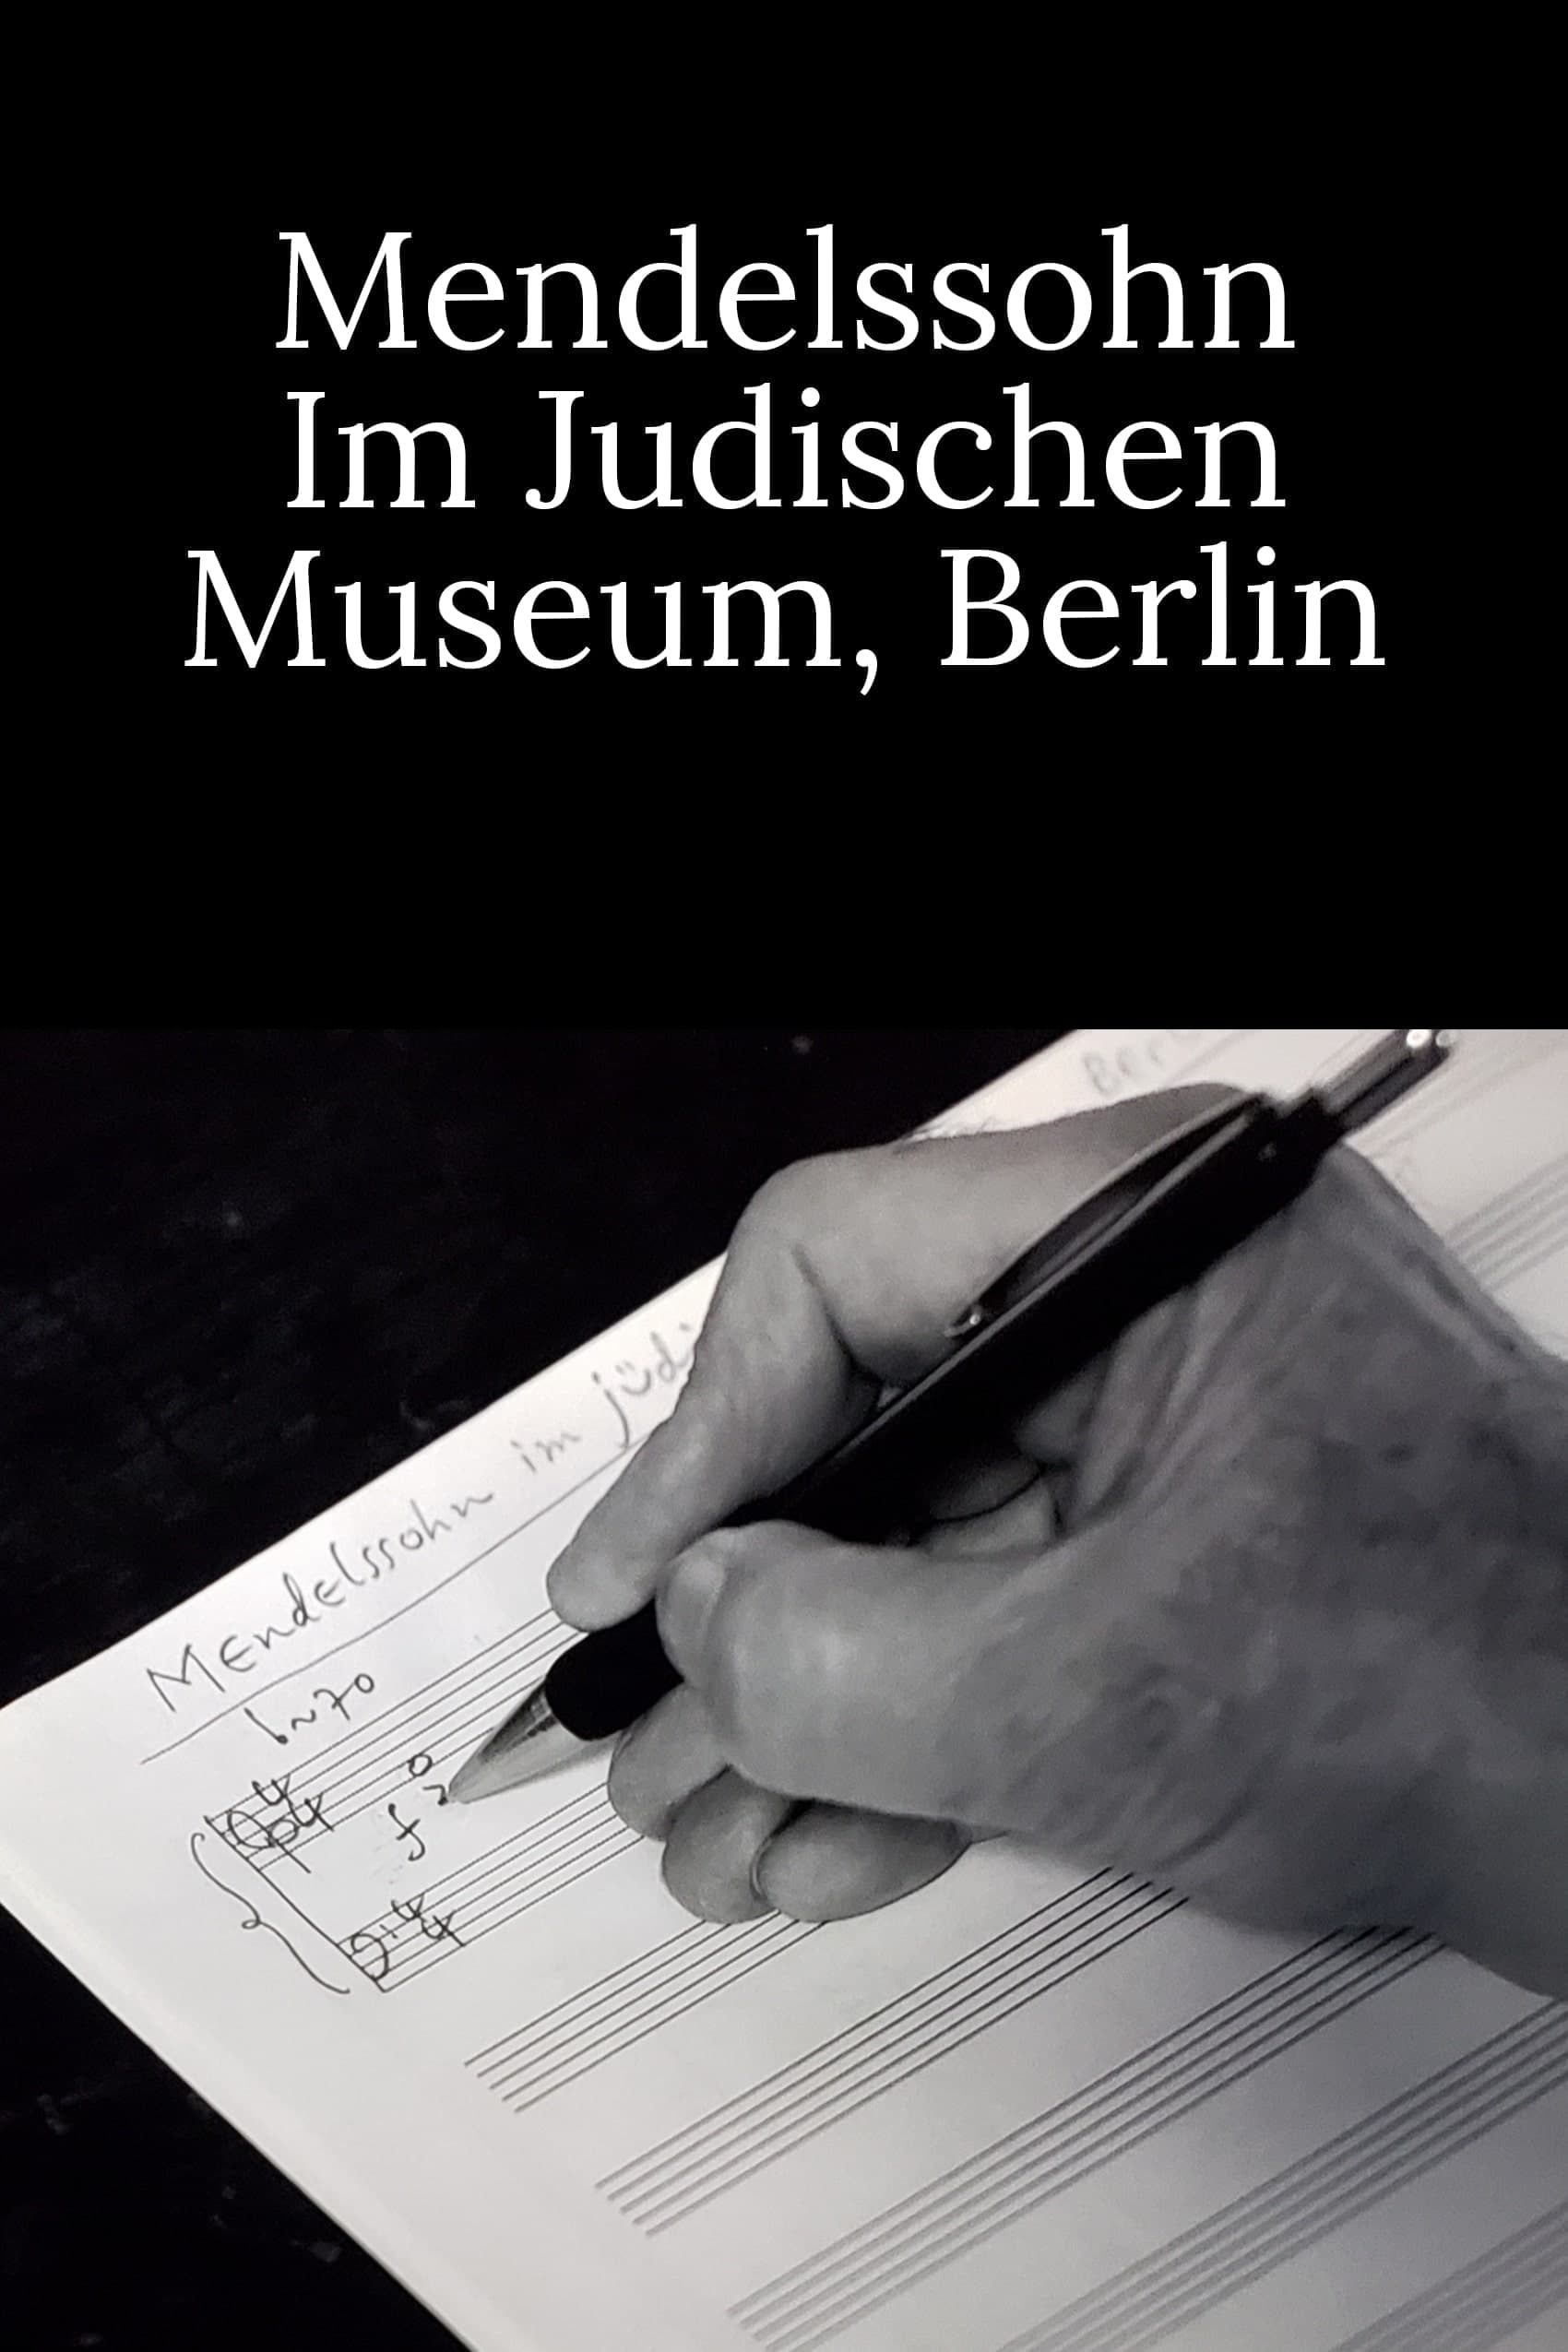 Mendelssohn at the Jewish Museum Berlin